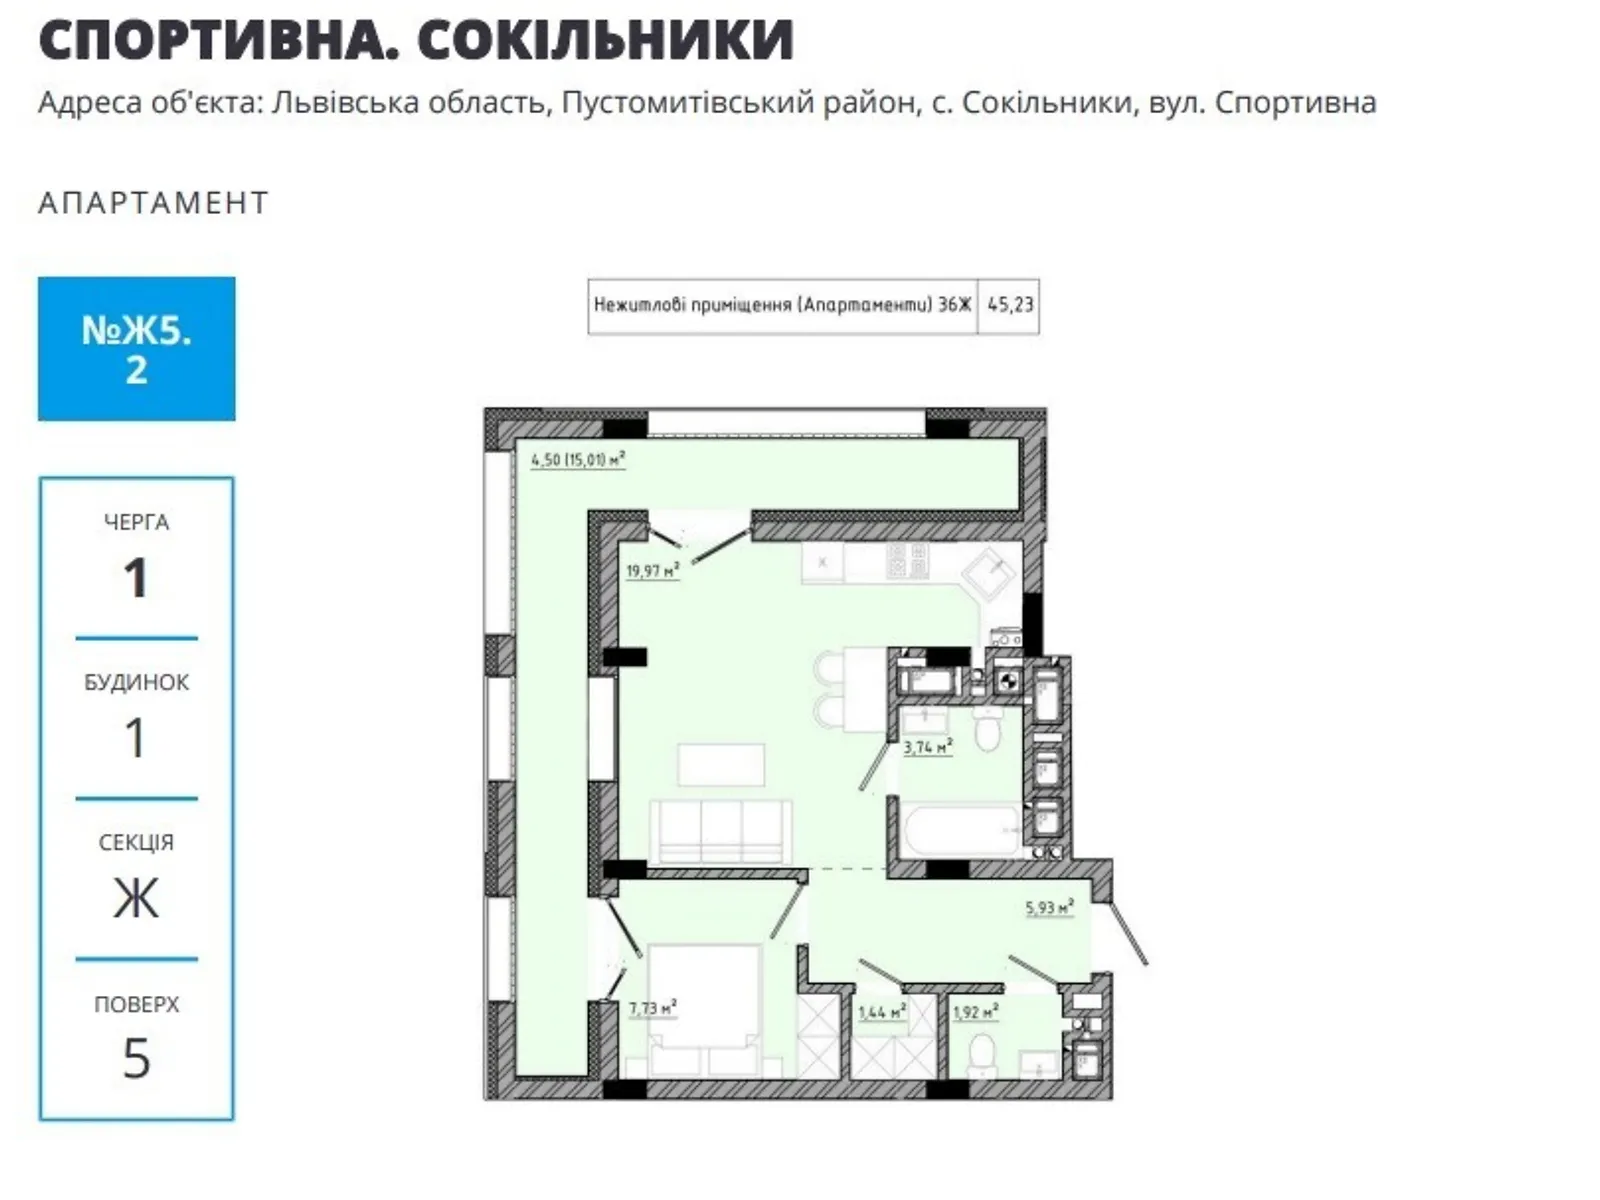 Продається 1-кімнатна квартира 45.23 кв. м у Сокільниках, вул. Спортивна, 1 - фото 1